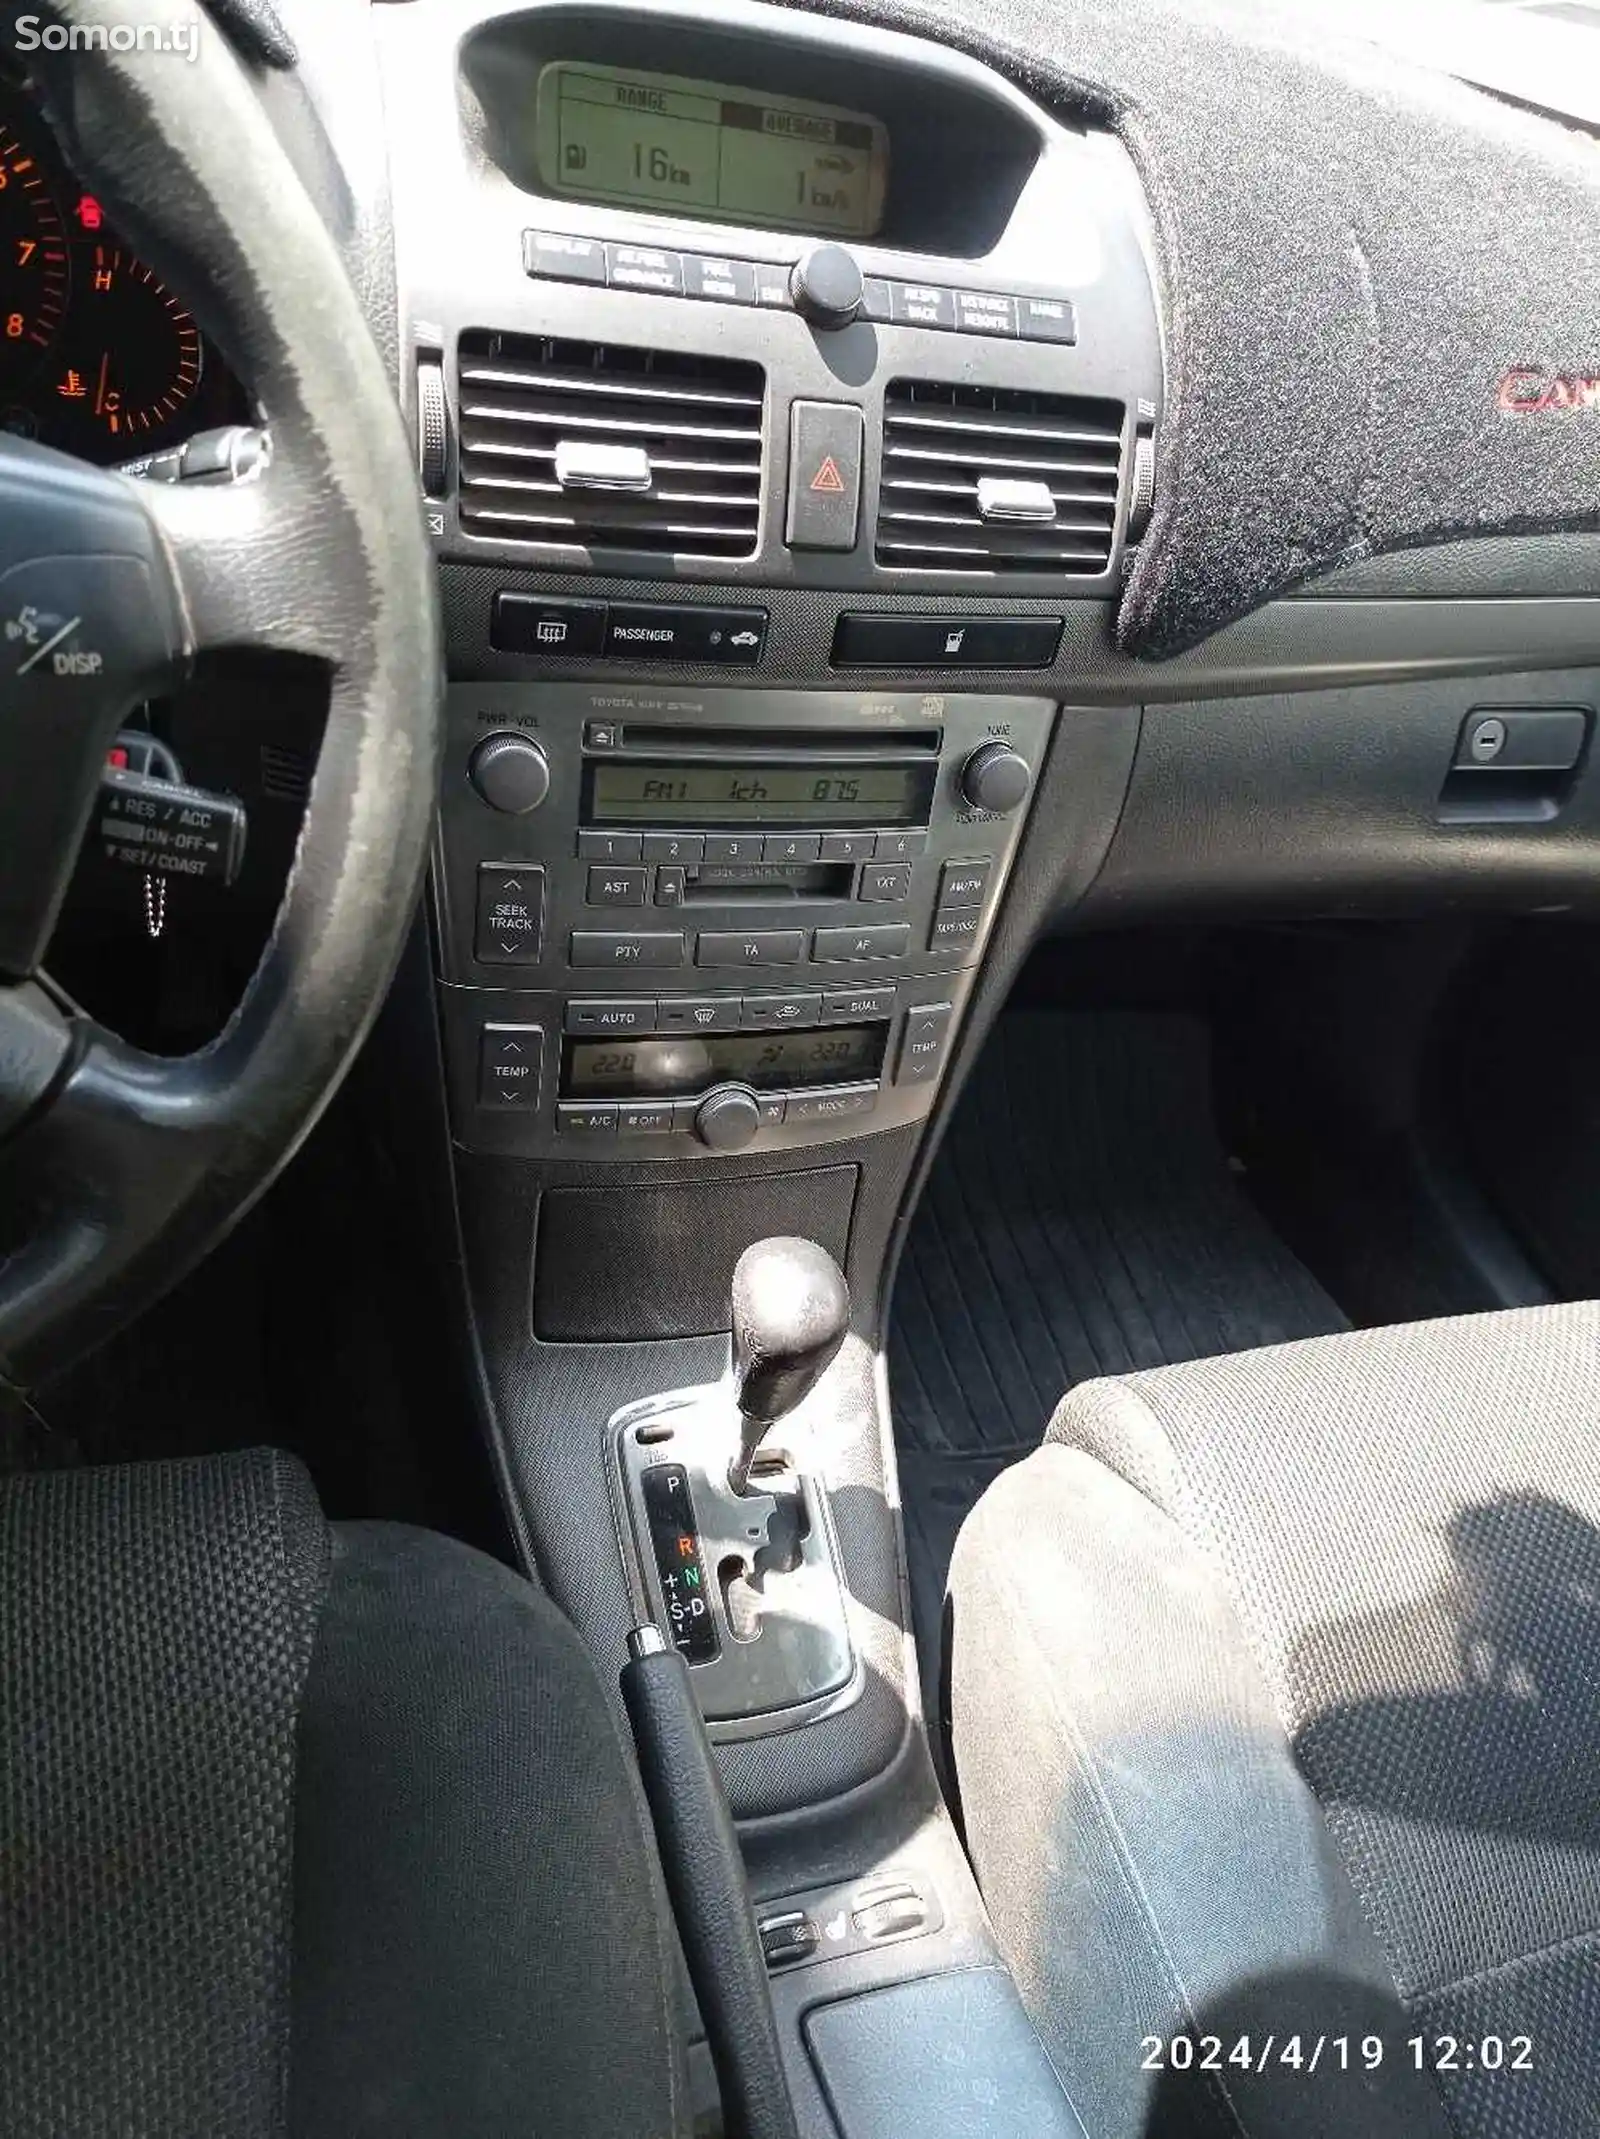 Toyota Avensis, 2004-11